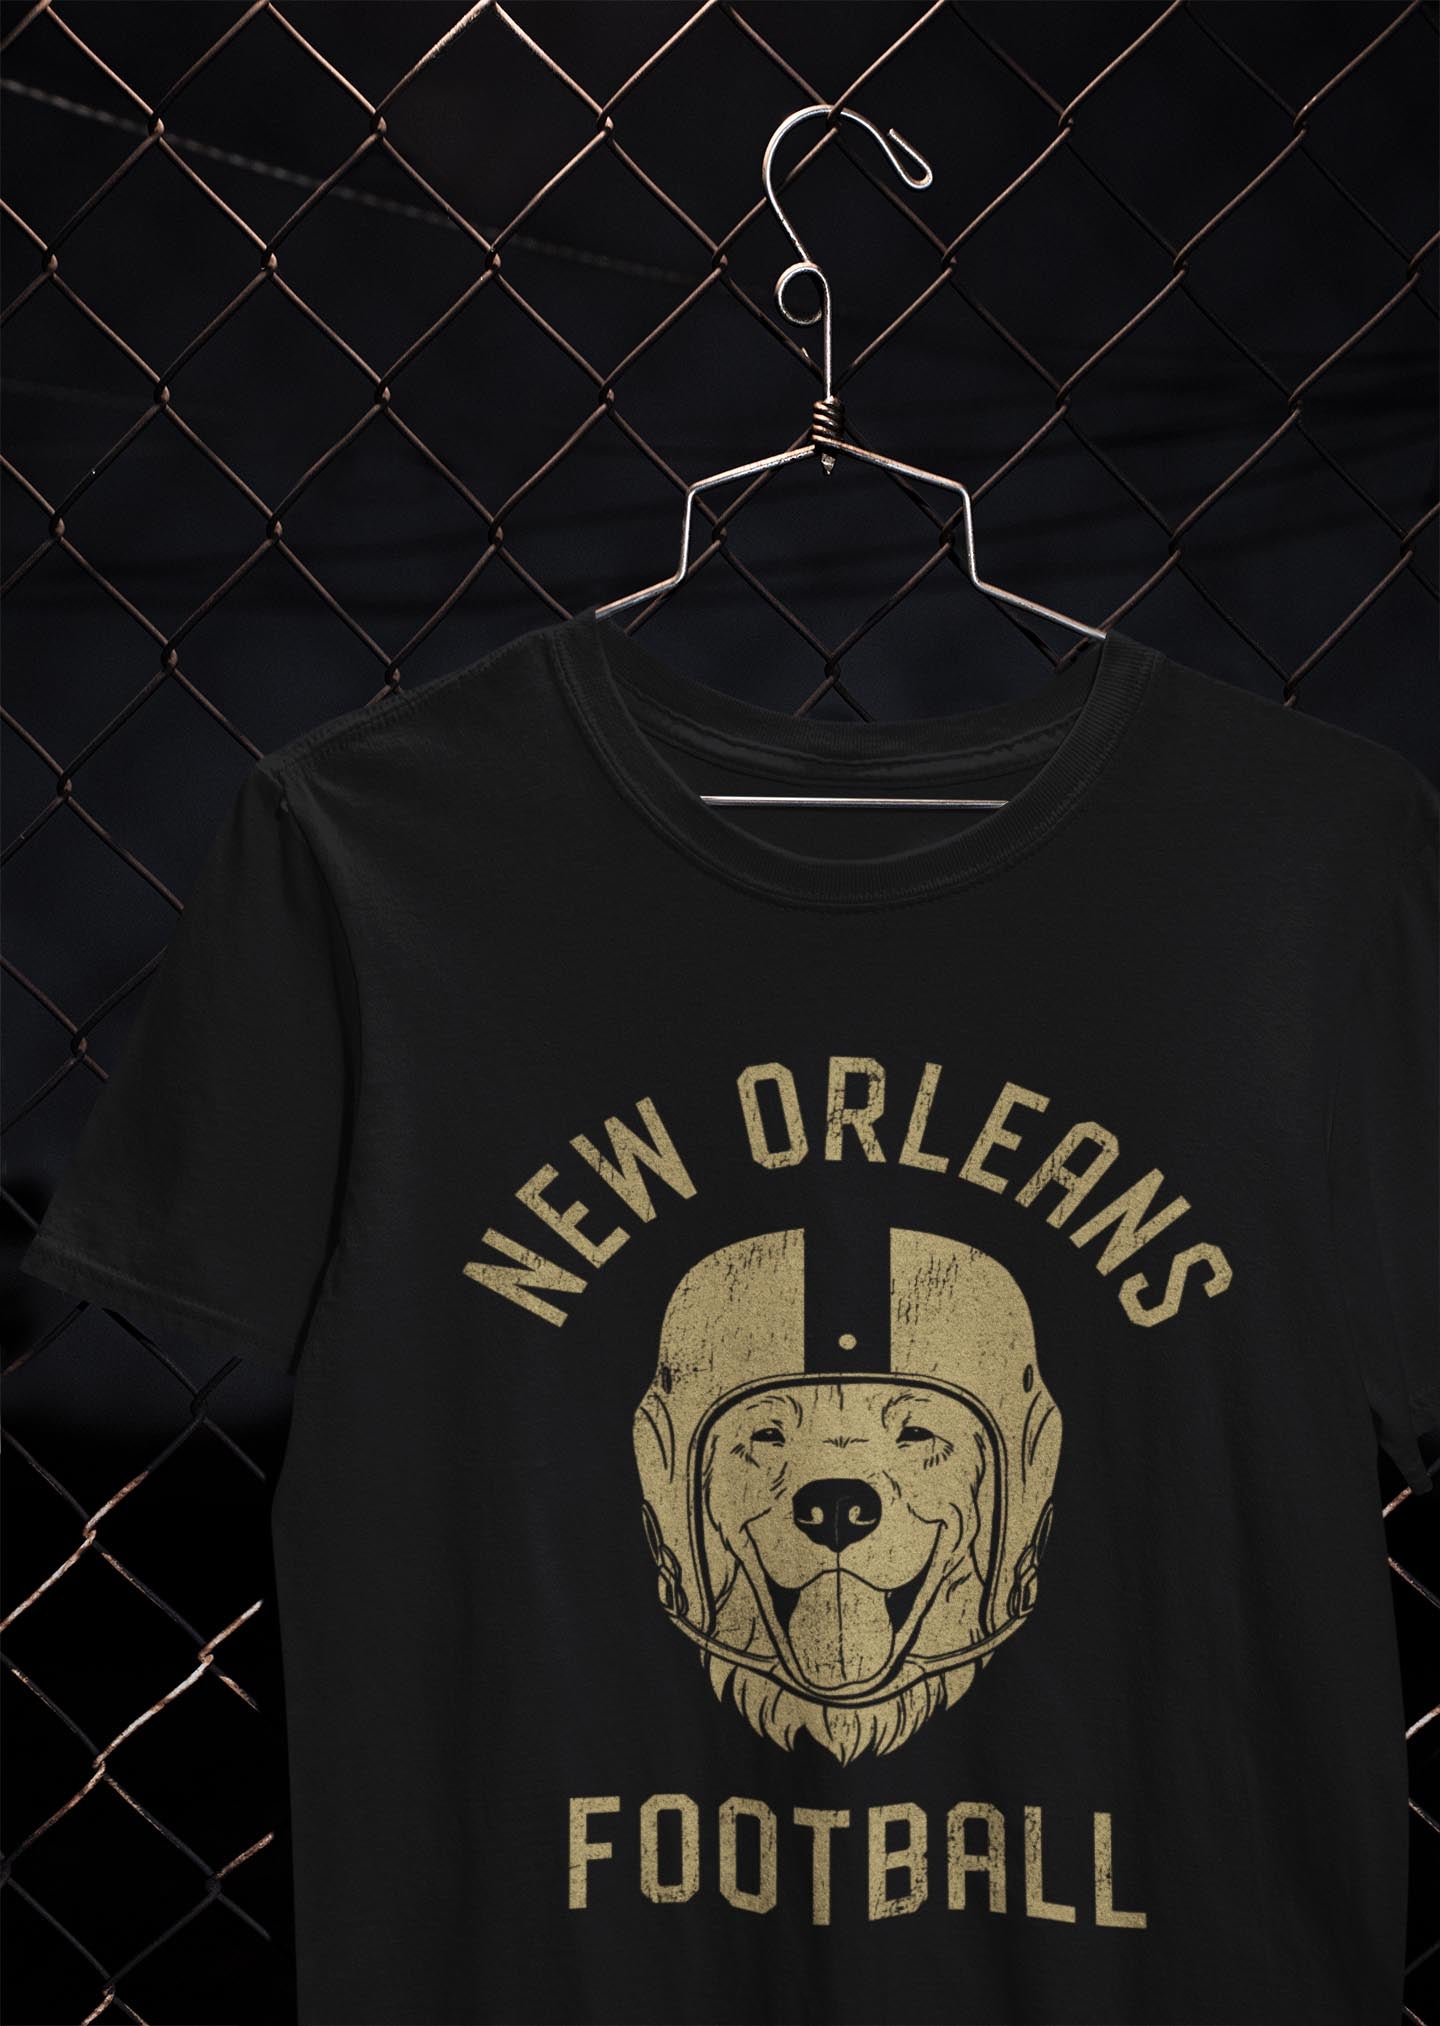 New Orleans Football Golden Retriever T-Shirt